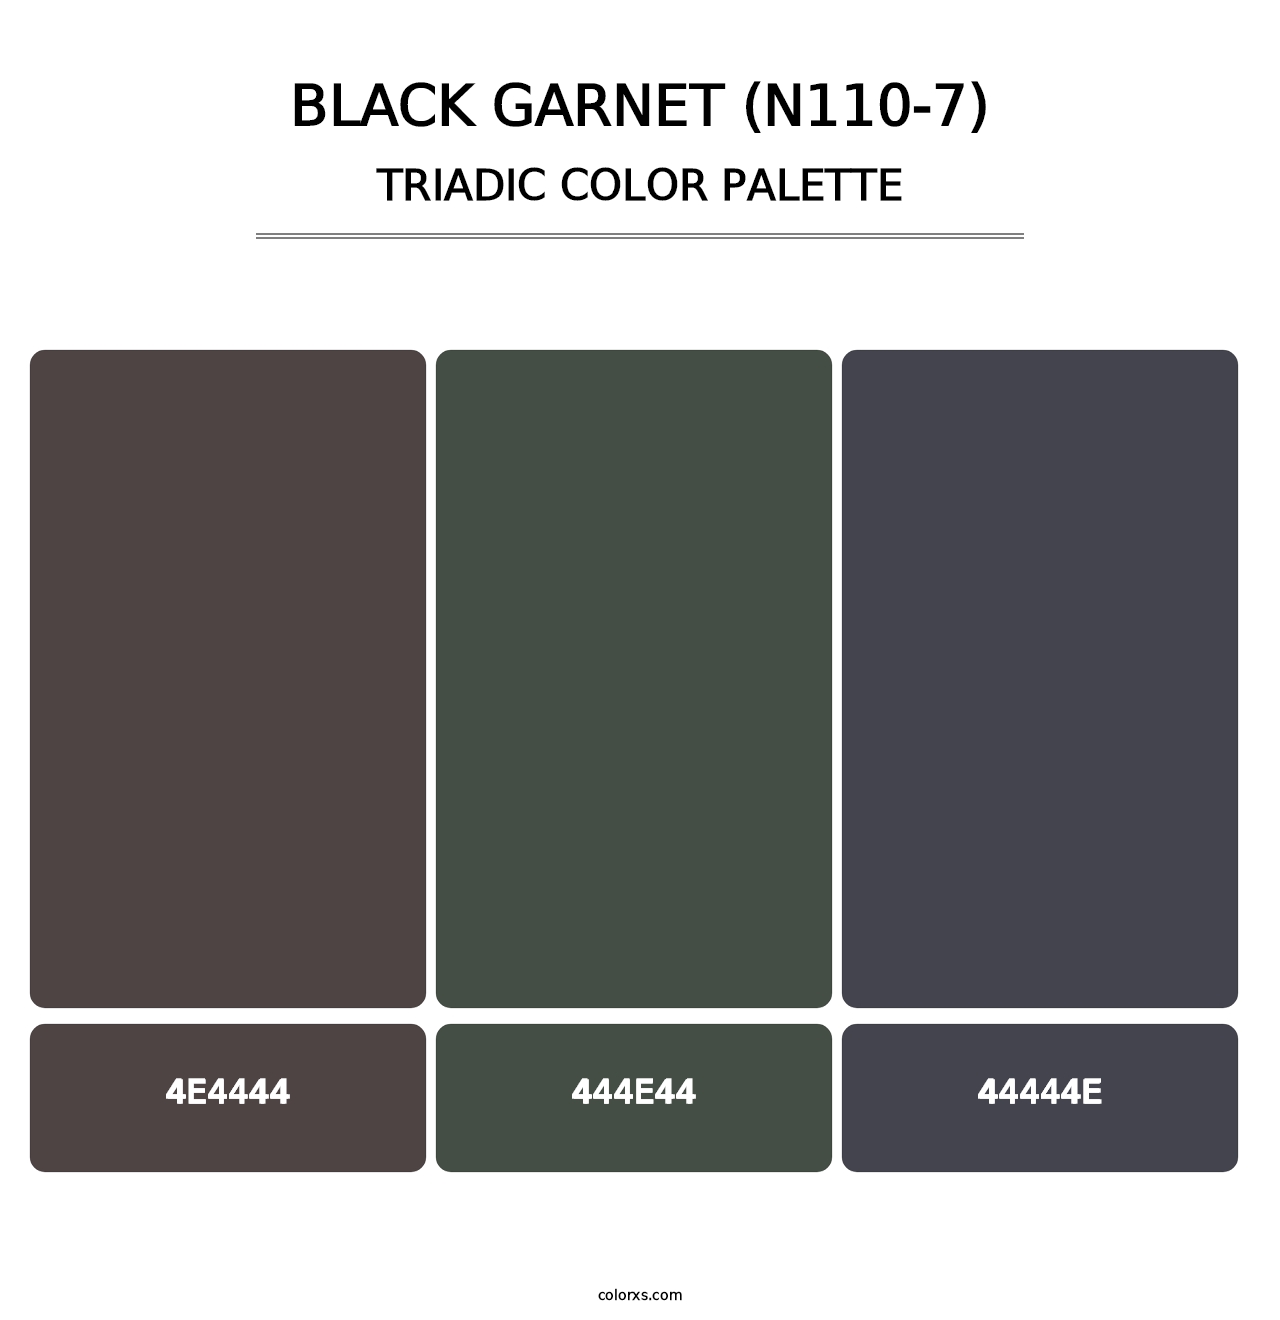 Black Garnet (N110-7) - Triadic Color Palette